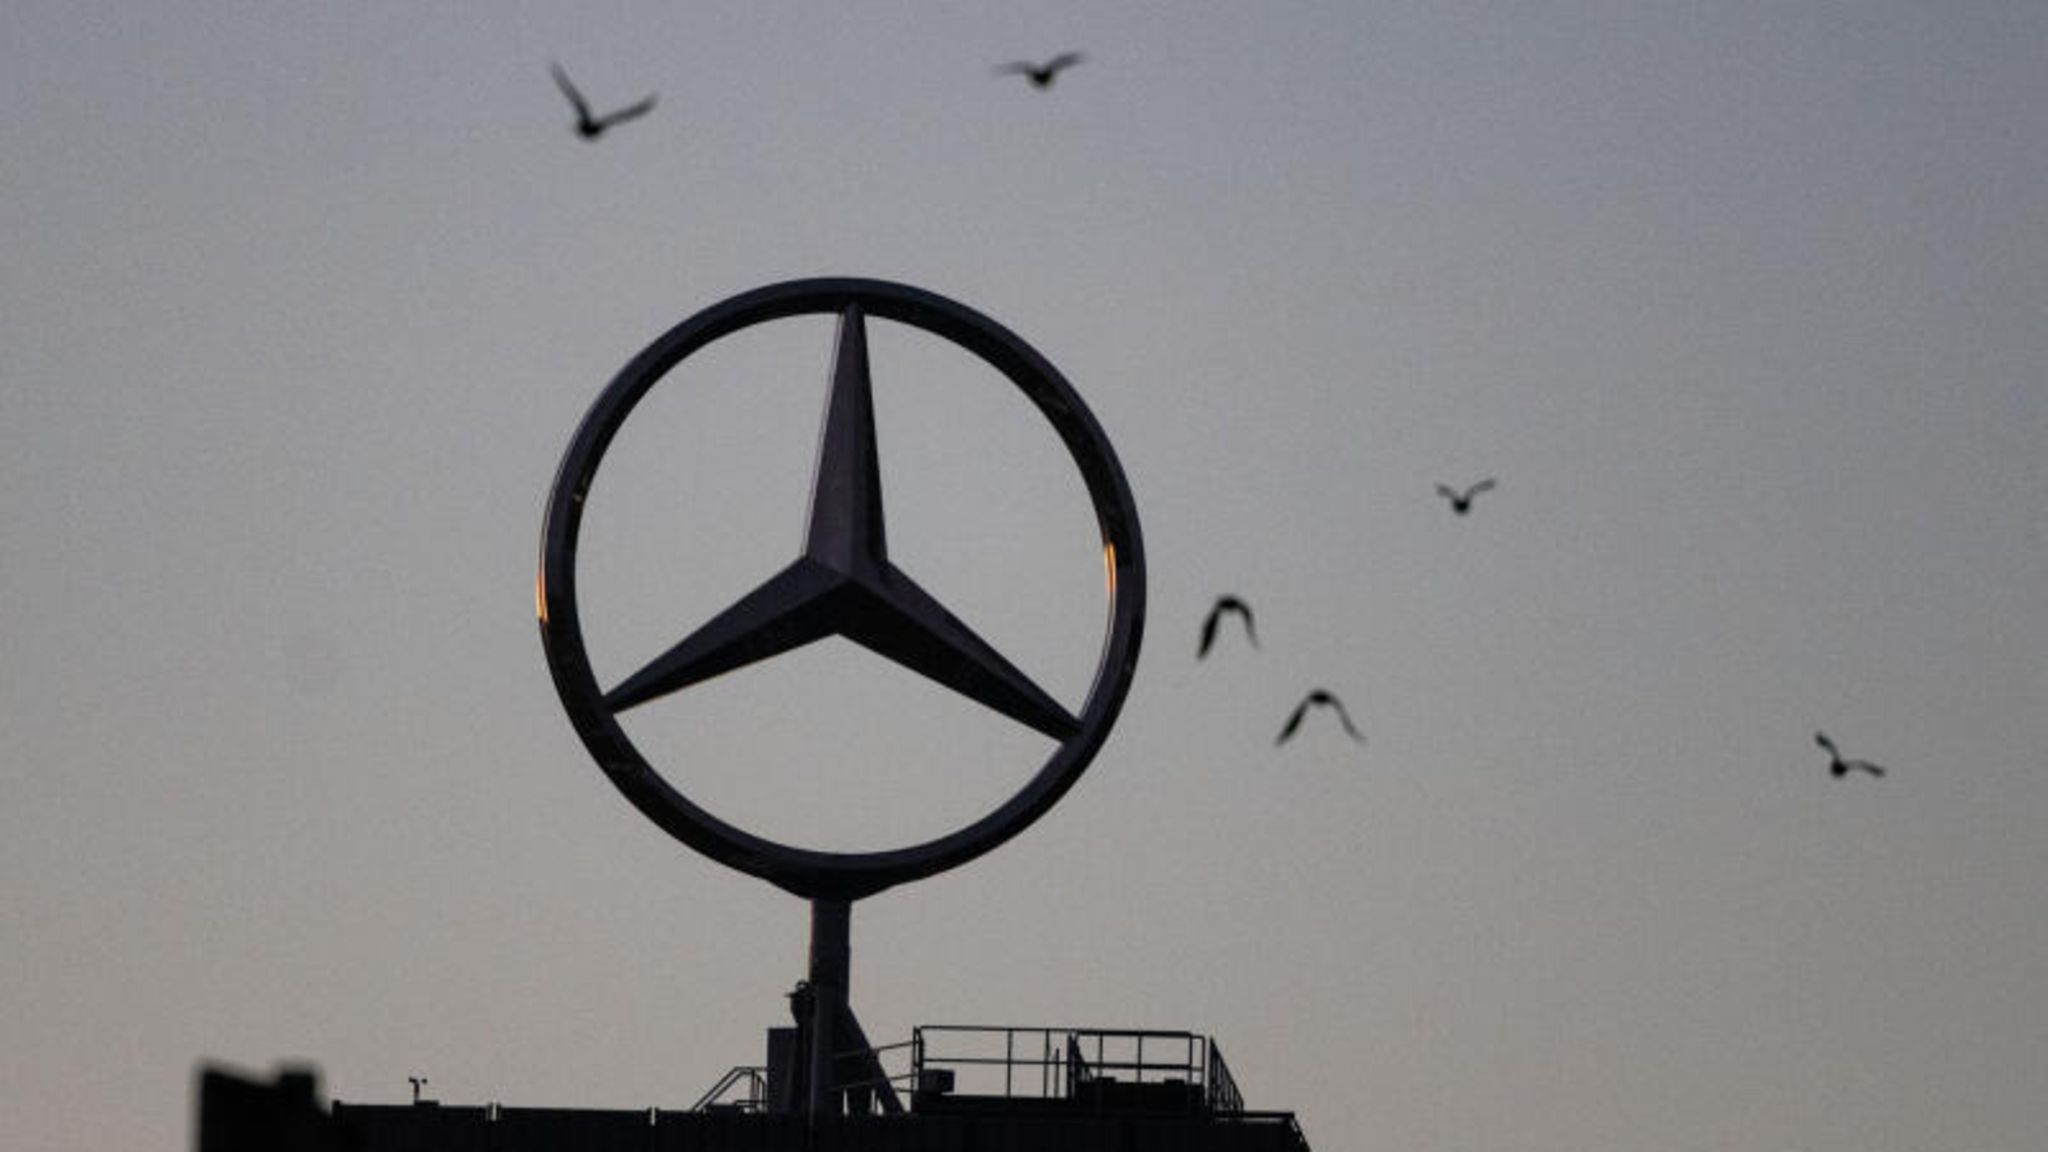 Foto zum Thema Mercedes-Benz Emblem – Kostenloses Bild zu Grau auf